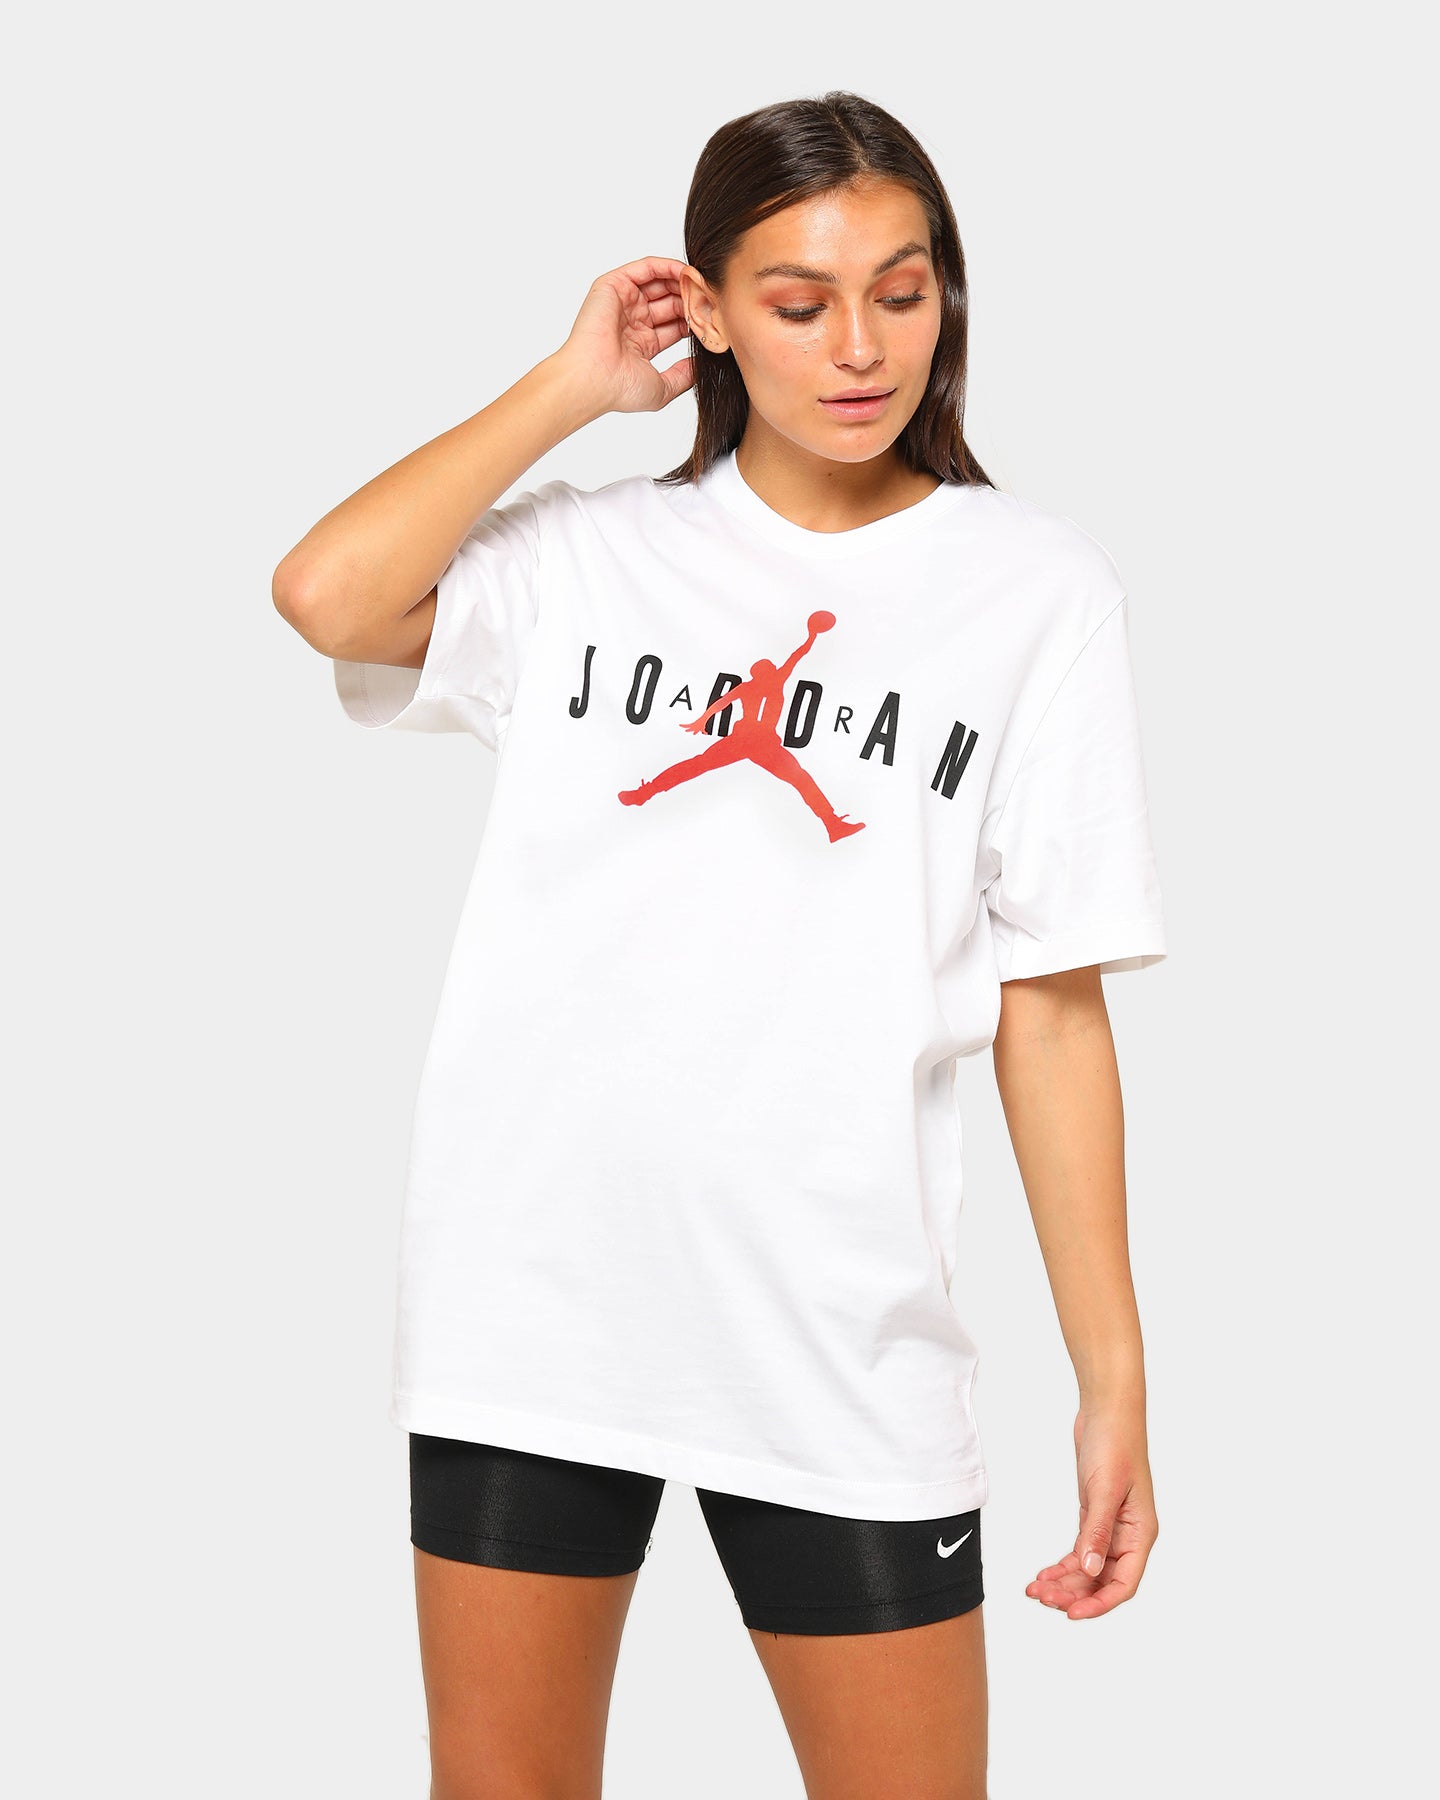 air jordan shirts womens